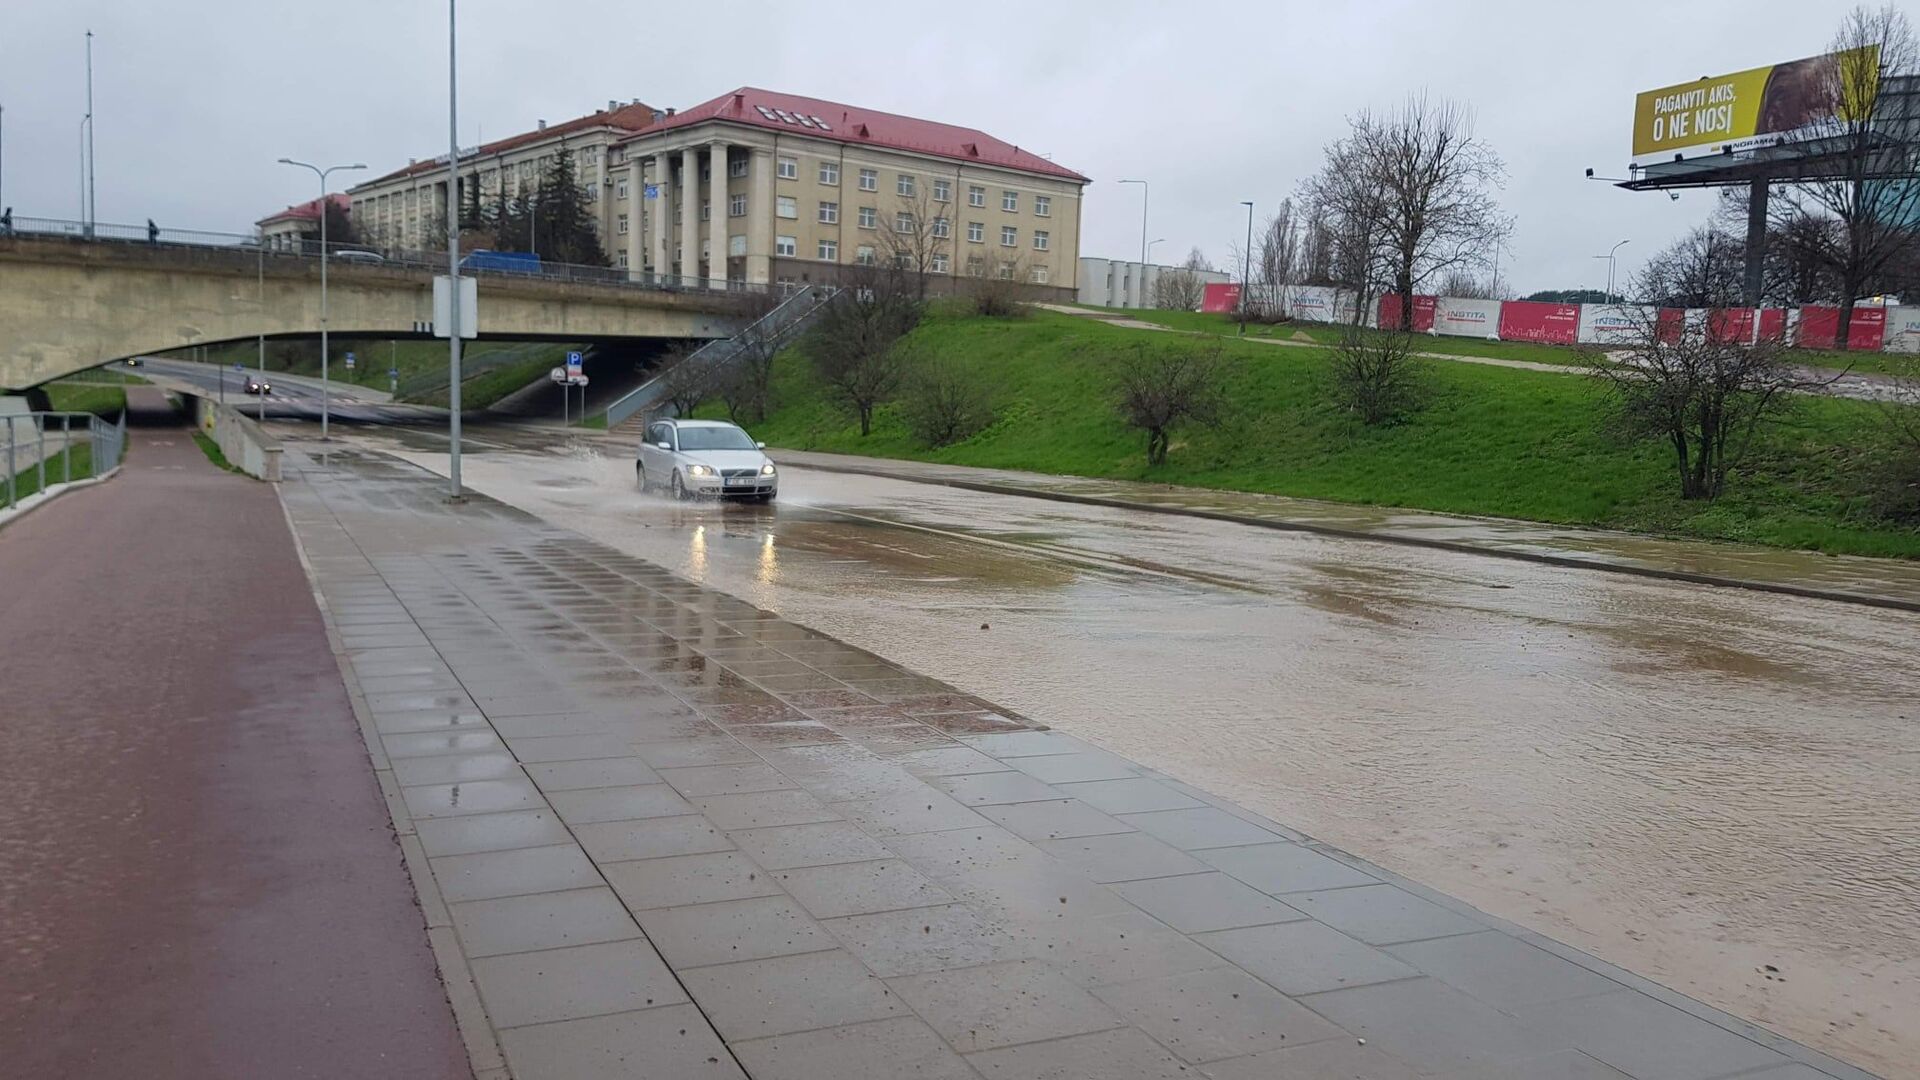 Улицу Упес в Вильнюсе залило водой из-за аварии с водопроводом, 23 апреля 2021 года - Sputnik Литва, 1920, 12.05.2021